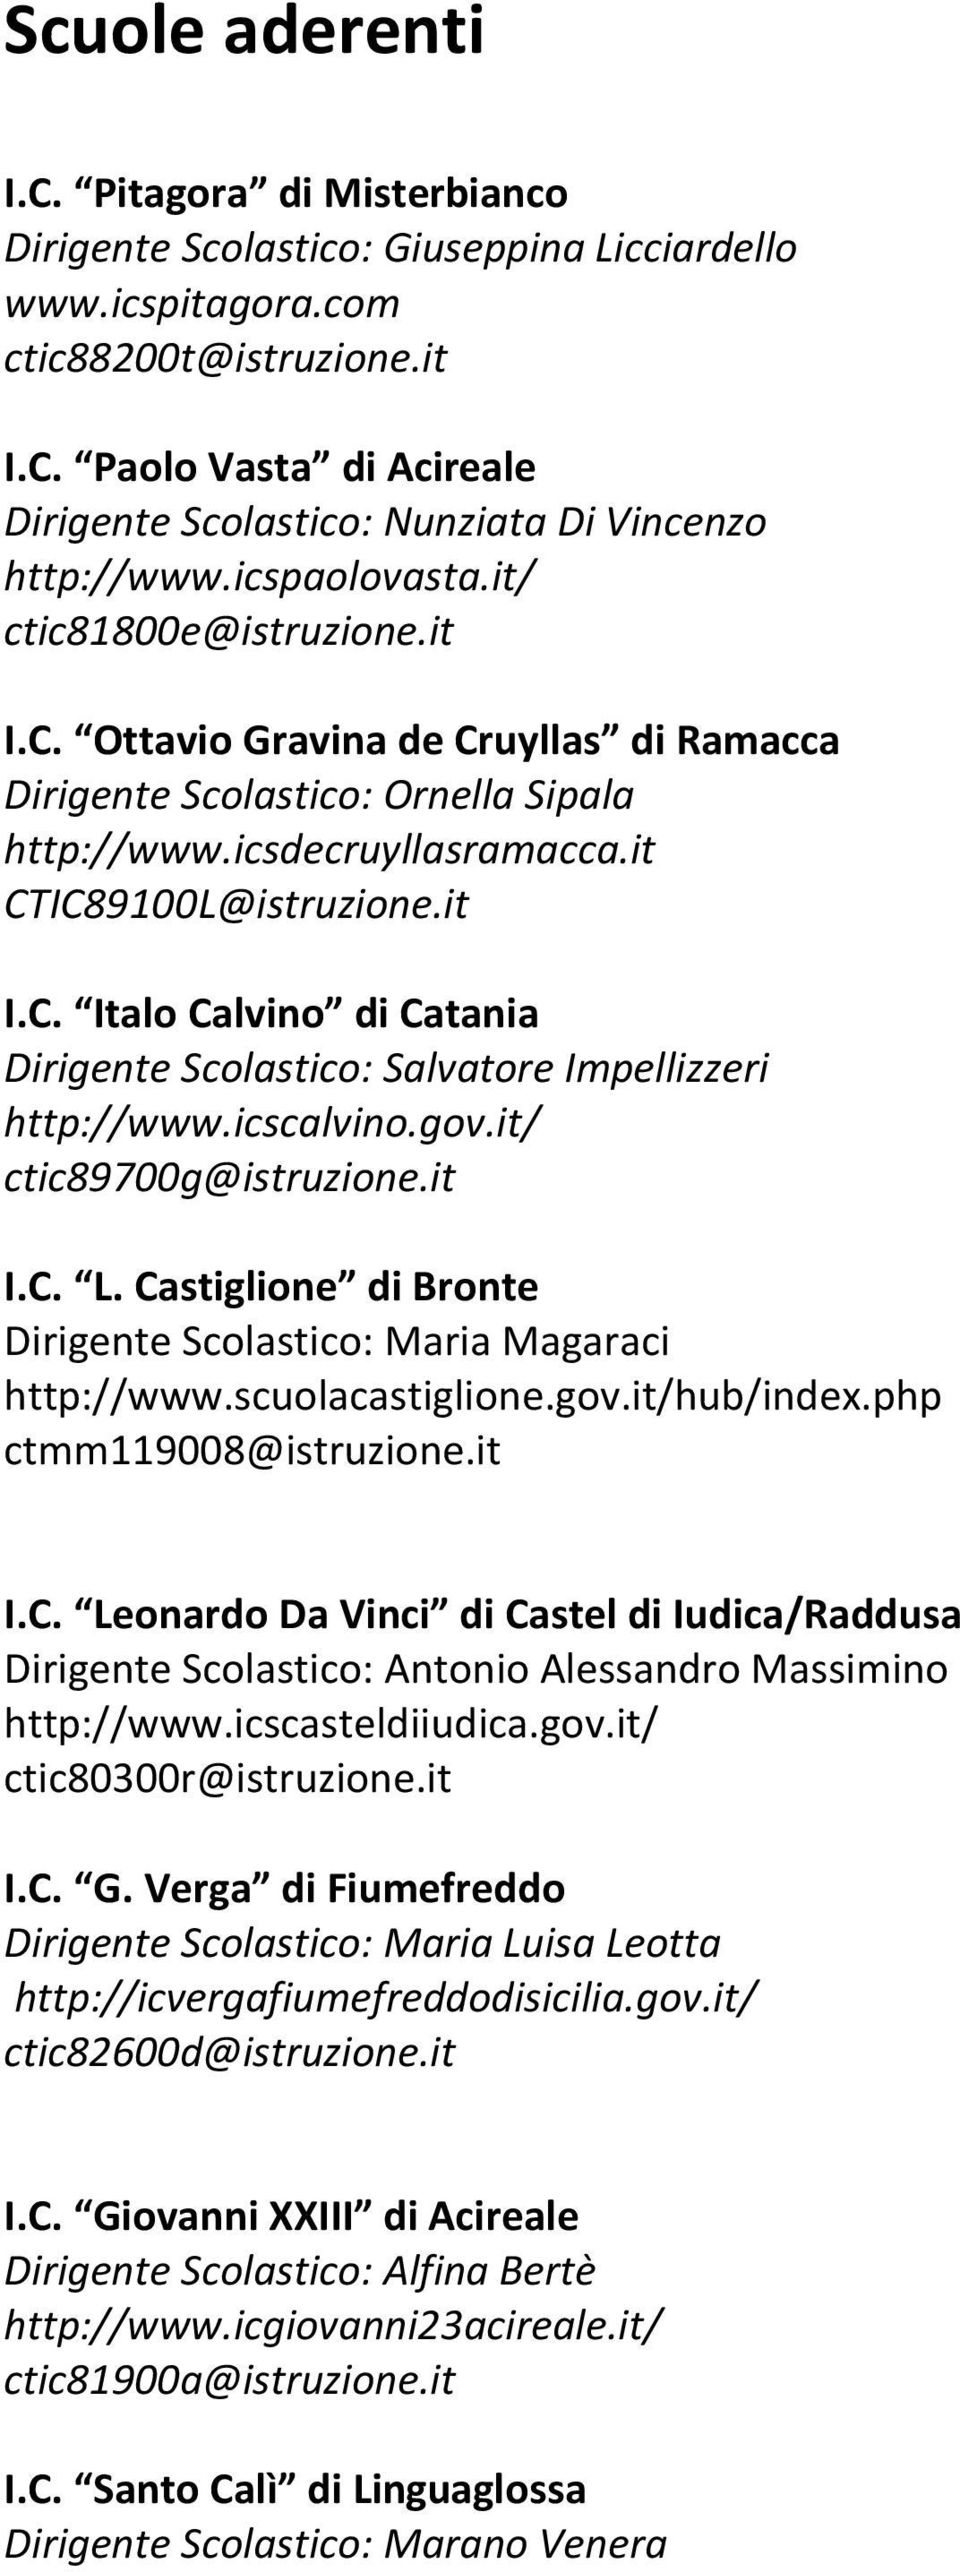 icscalvino.gov.it/ ctic89700g@istruzione.it I.C. L. Castiglione di Bronte Dirigente Scolastico: Maria Magaraci http://www.scuolacastiglione.gov.it/hub/index.php ctmm119008@istruzione.it I.C. Leonardo Da Vinci di Castel di Iudica/Raddusa Dirigente Scolastico: Antonio Alessandro Massimino http://www.